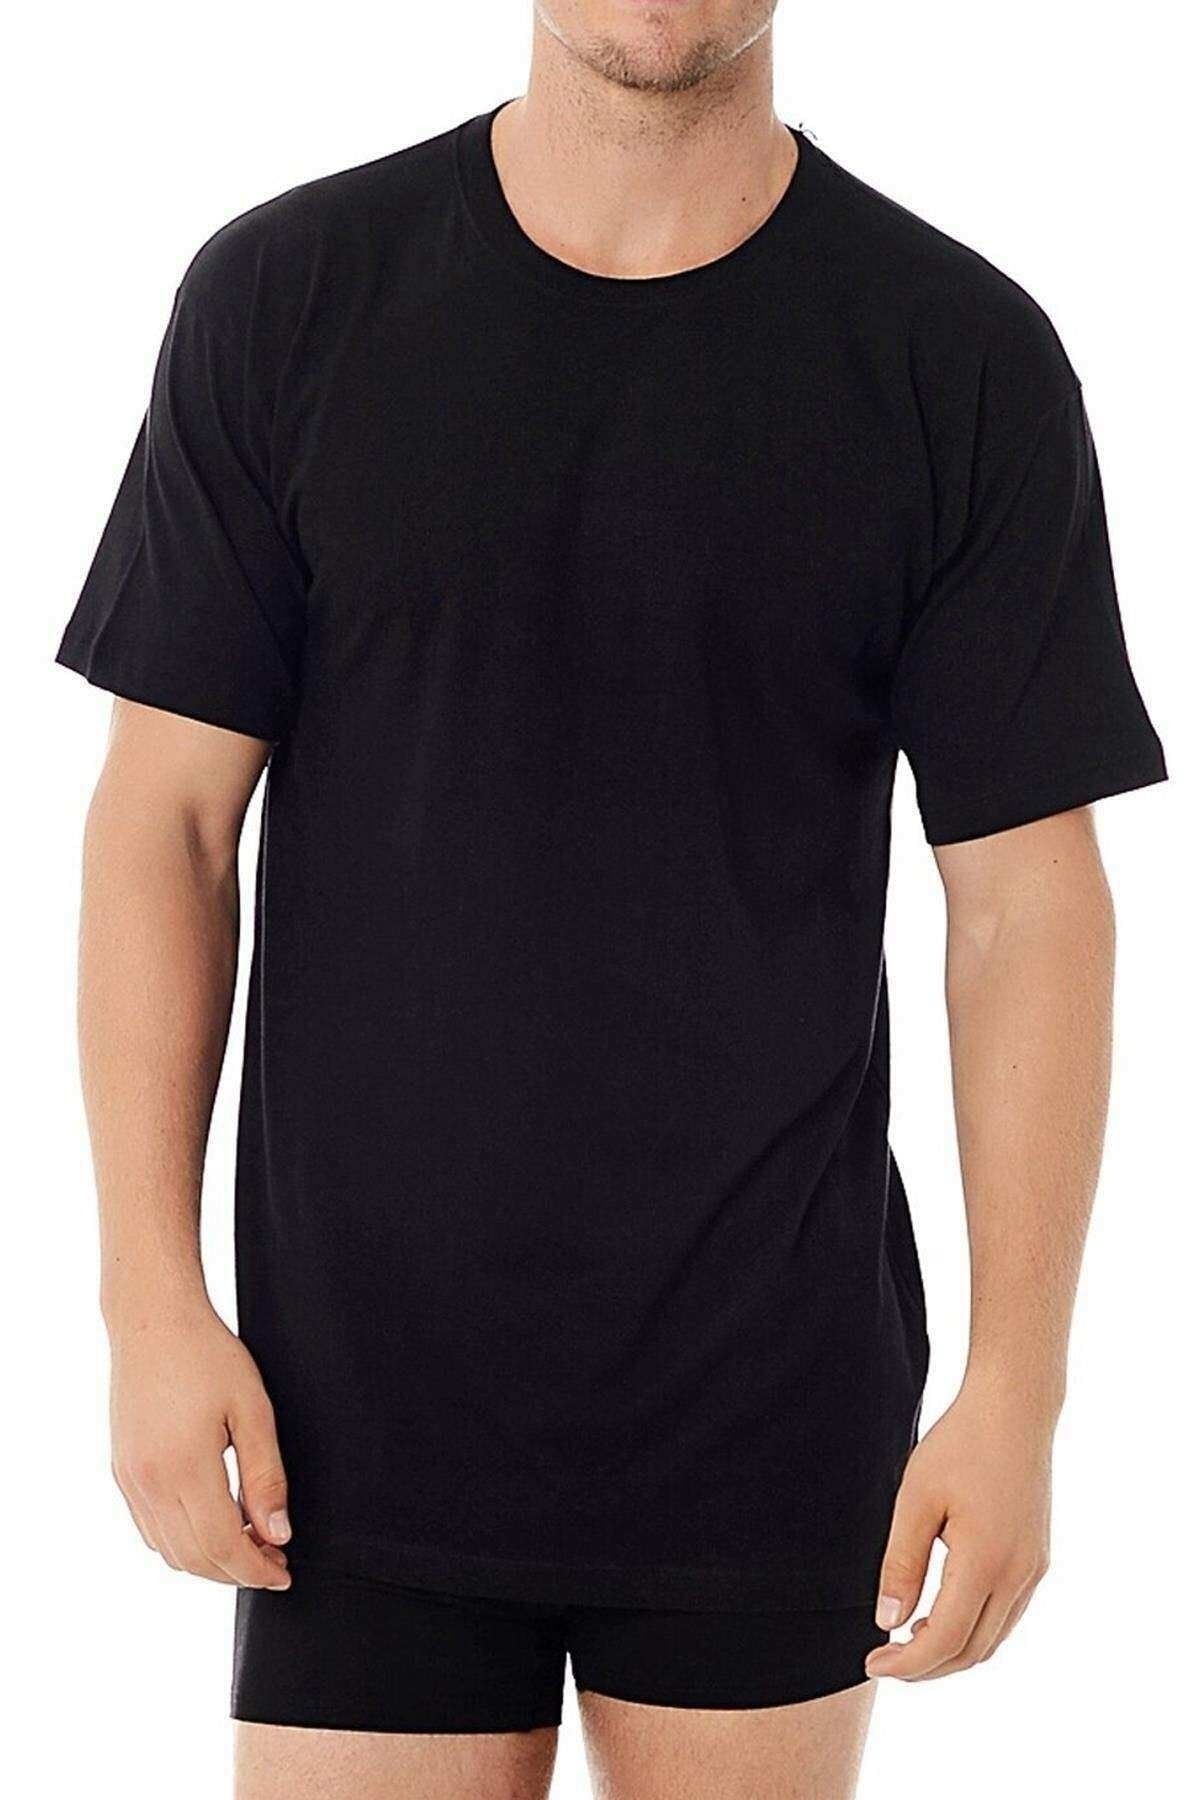 Kom Kısa Kol Sıfır Yaka Koton Modal Erkek Eduardo 2li T-shirt 44TS10031SIYA